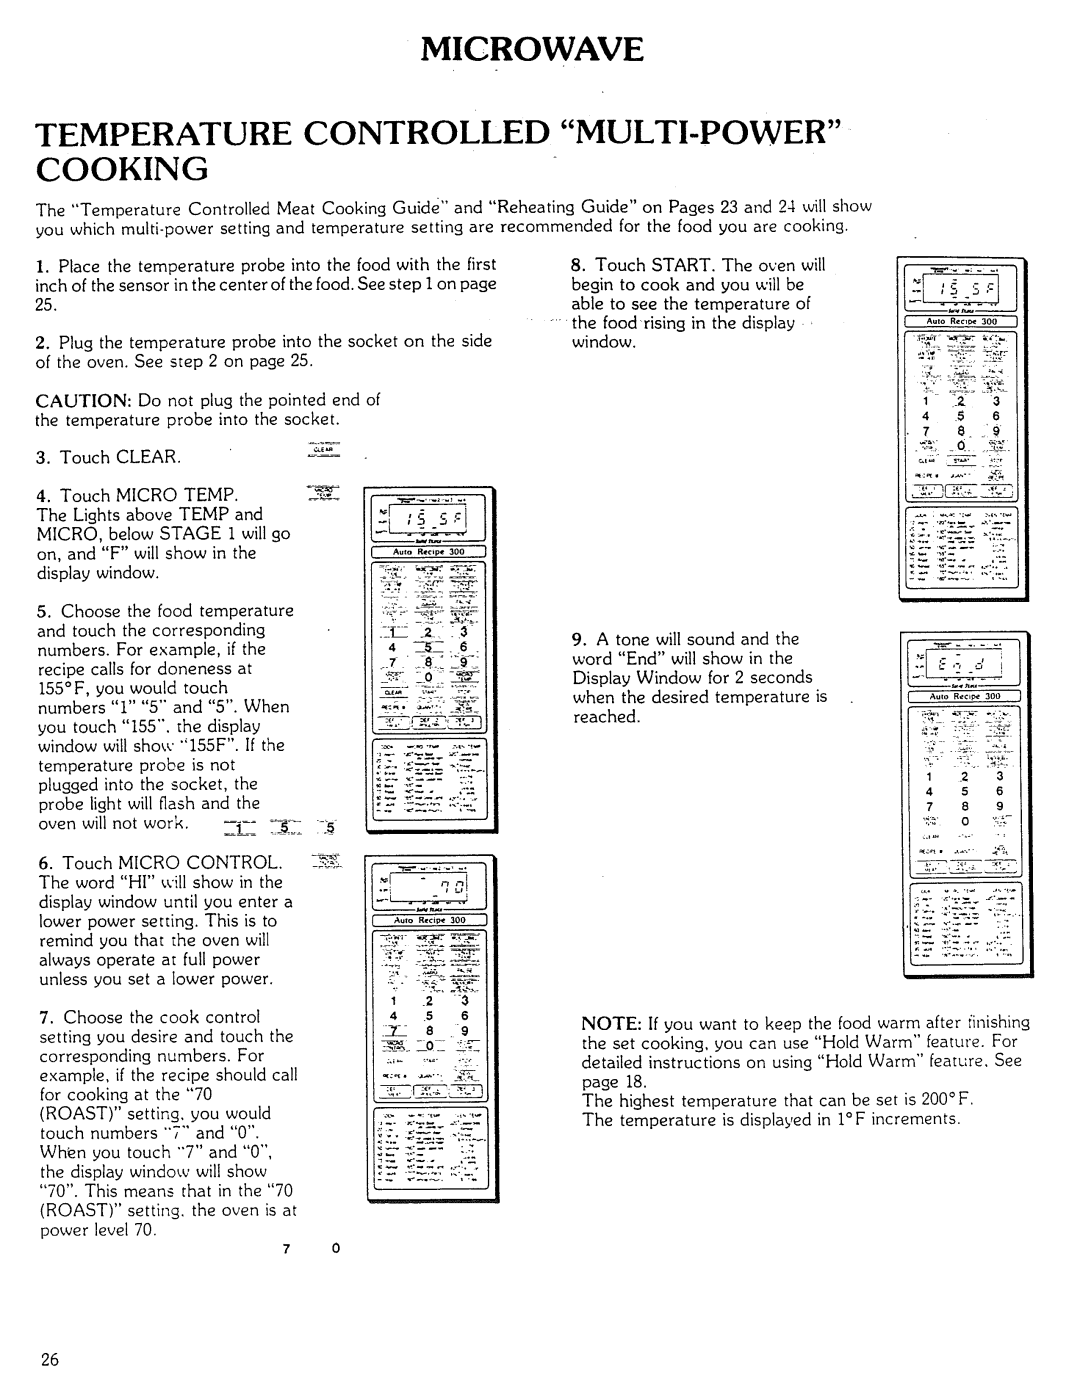 Kenmore Microwave Oven manual Temperature Controlled Multi-Powercooking, iiiii: :iil, 5_:$ 